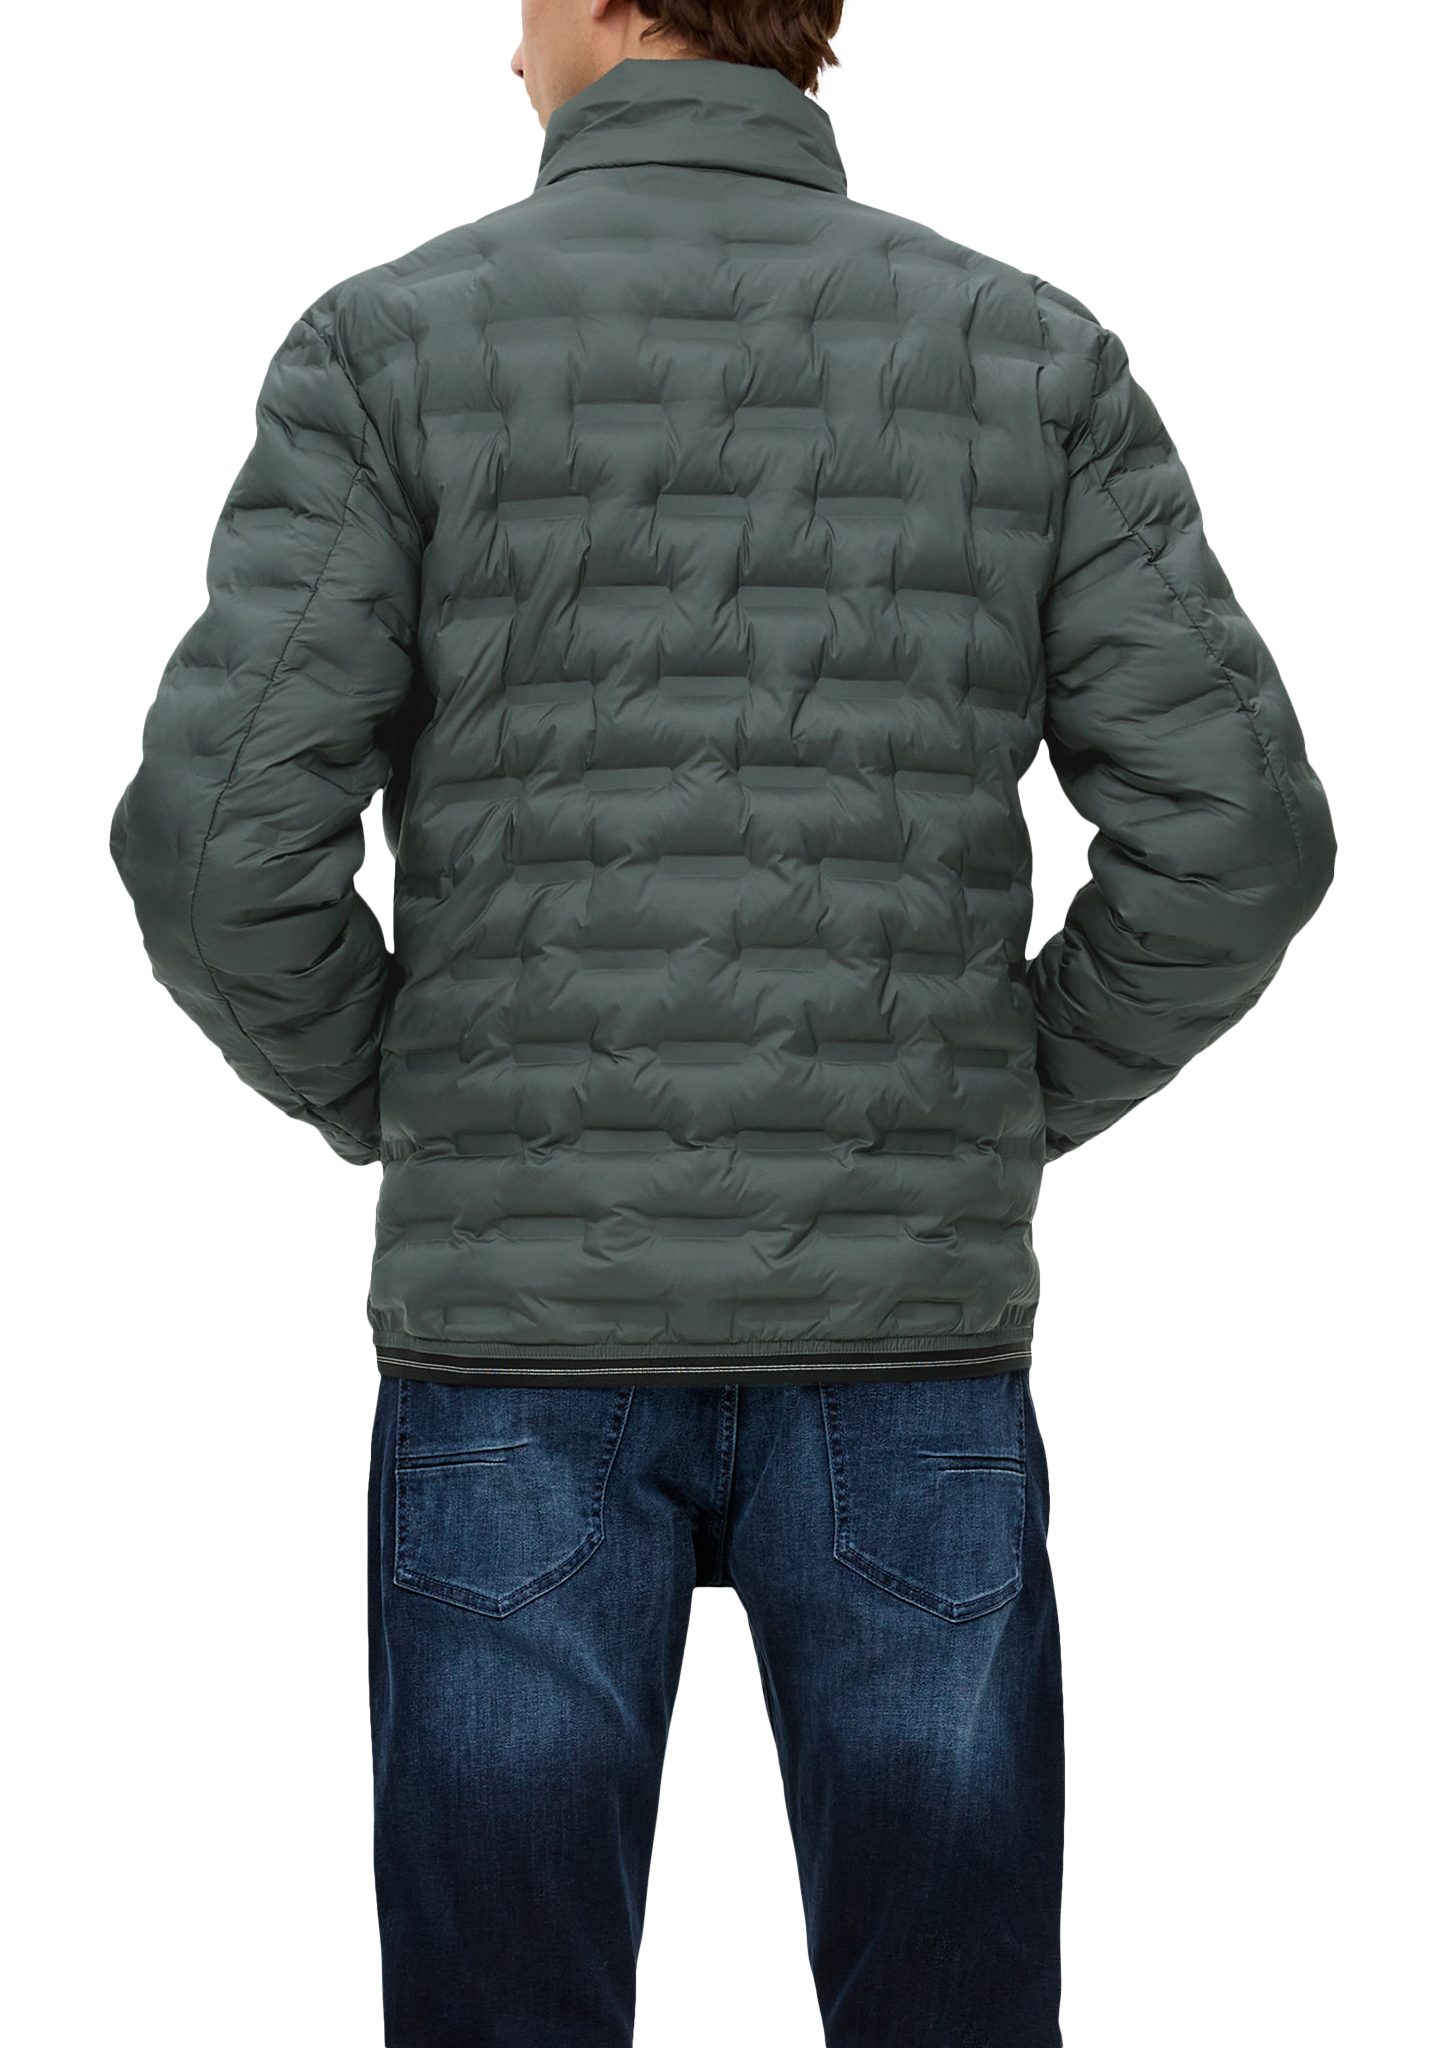 Allwetterjacke Jacke mit olivgrün Reißverschlusstaschen Logo s.Oliver